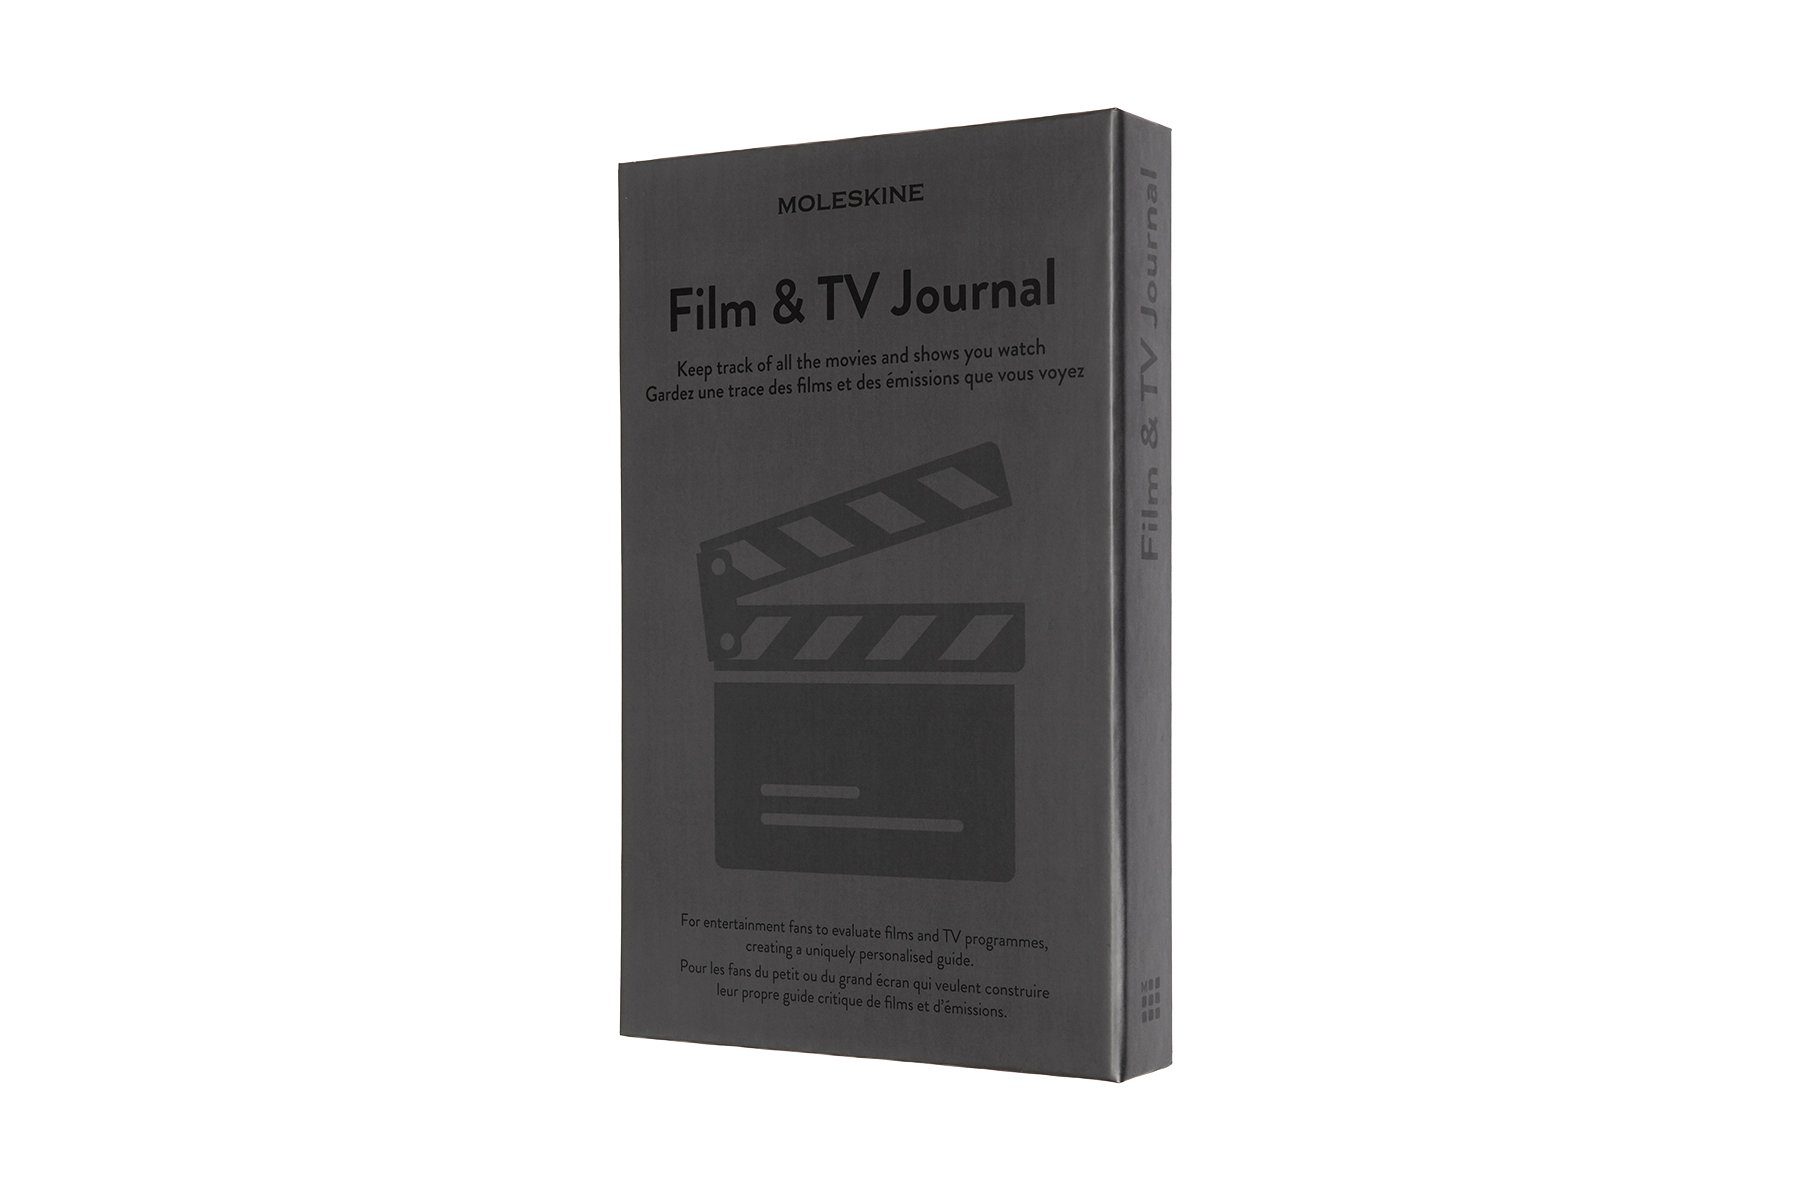 MOLESKINE Notizbuch, Passion Journal - Fester Einband - Groß (13x21) - Film & TV - Dunkelgrau